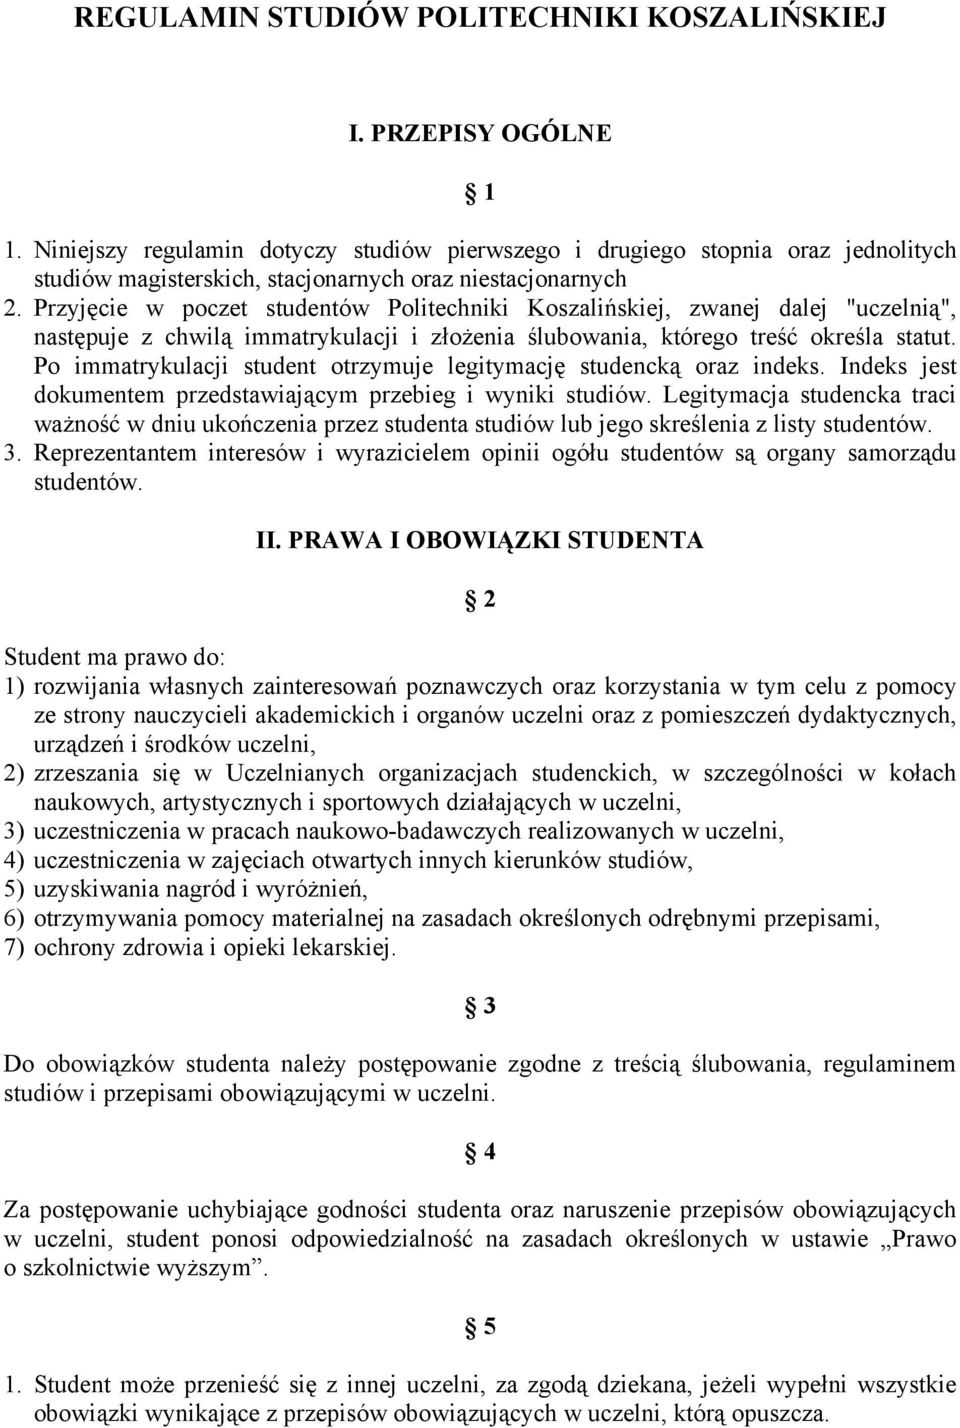 Przyjęcie w poczet studentów Politechniki Koszalińskiej, zwanej dalej "uczelnią", następuje z chwilą immatrykulacji i złożenia ślubowania, którego treść określa statut.